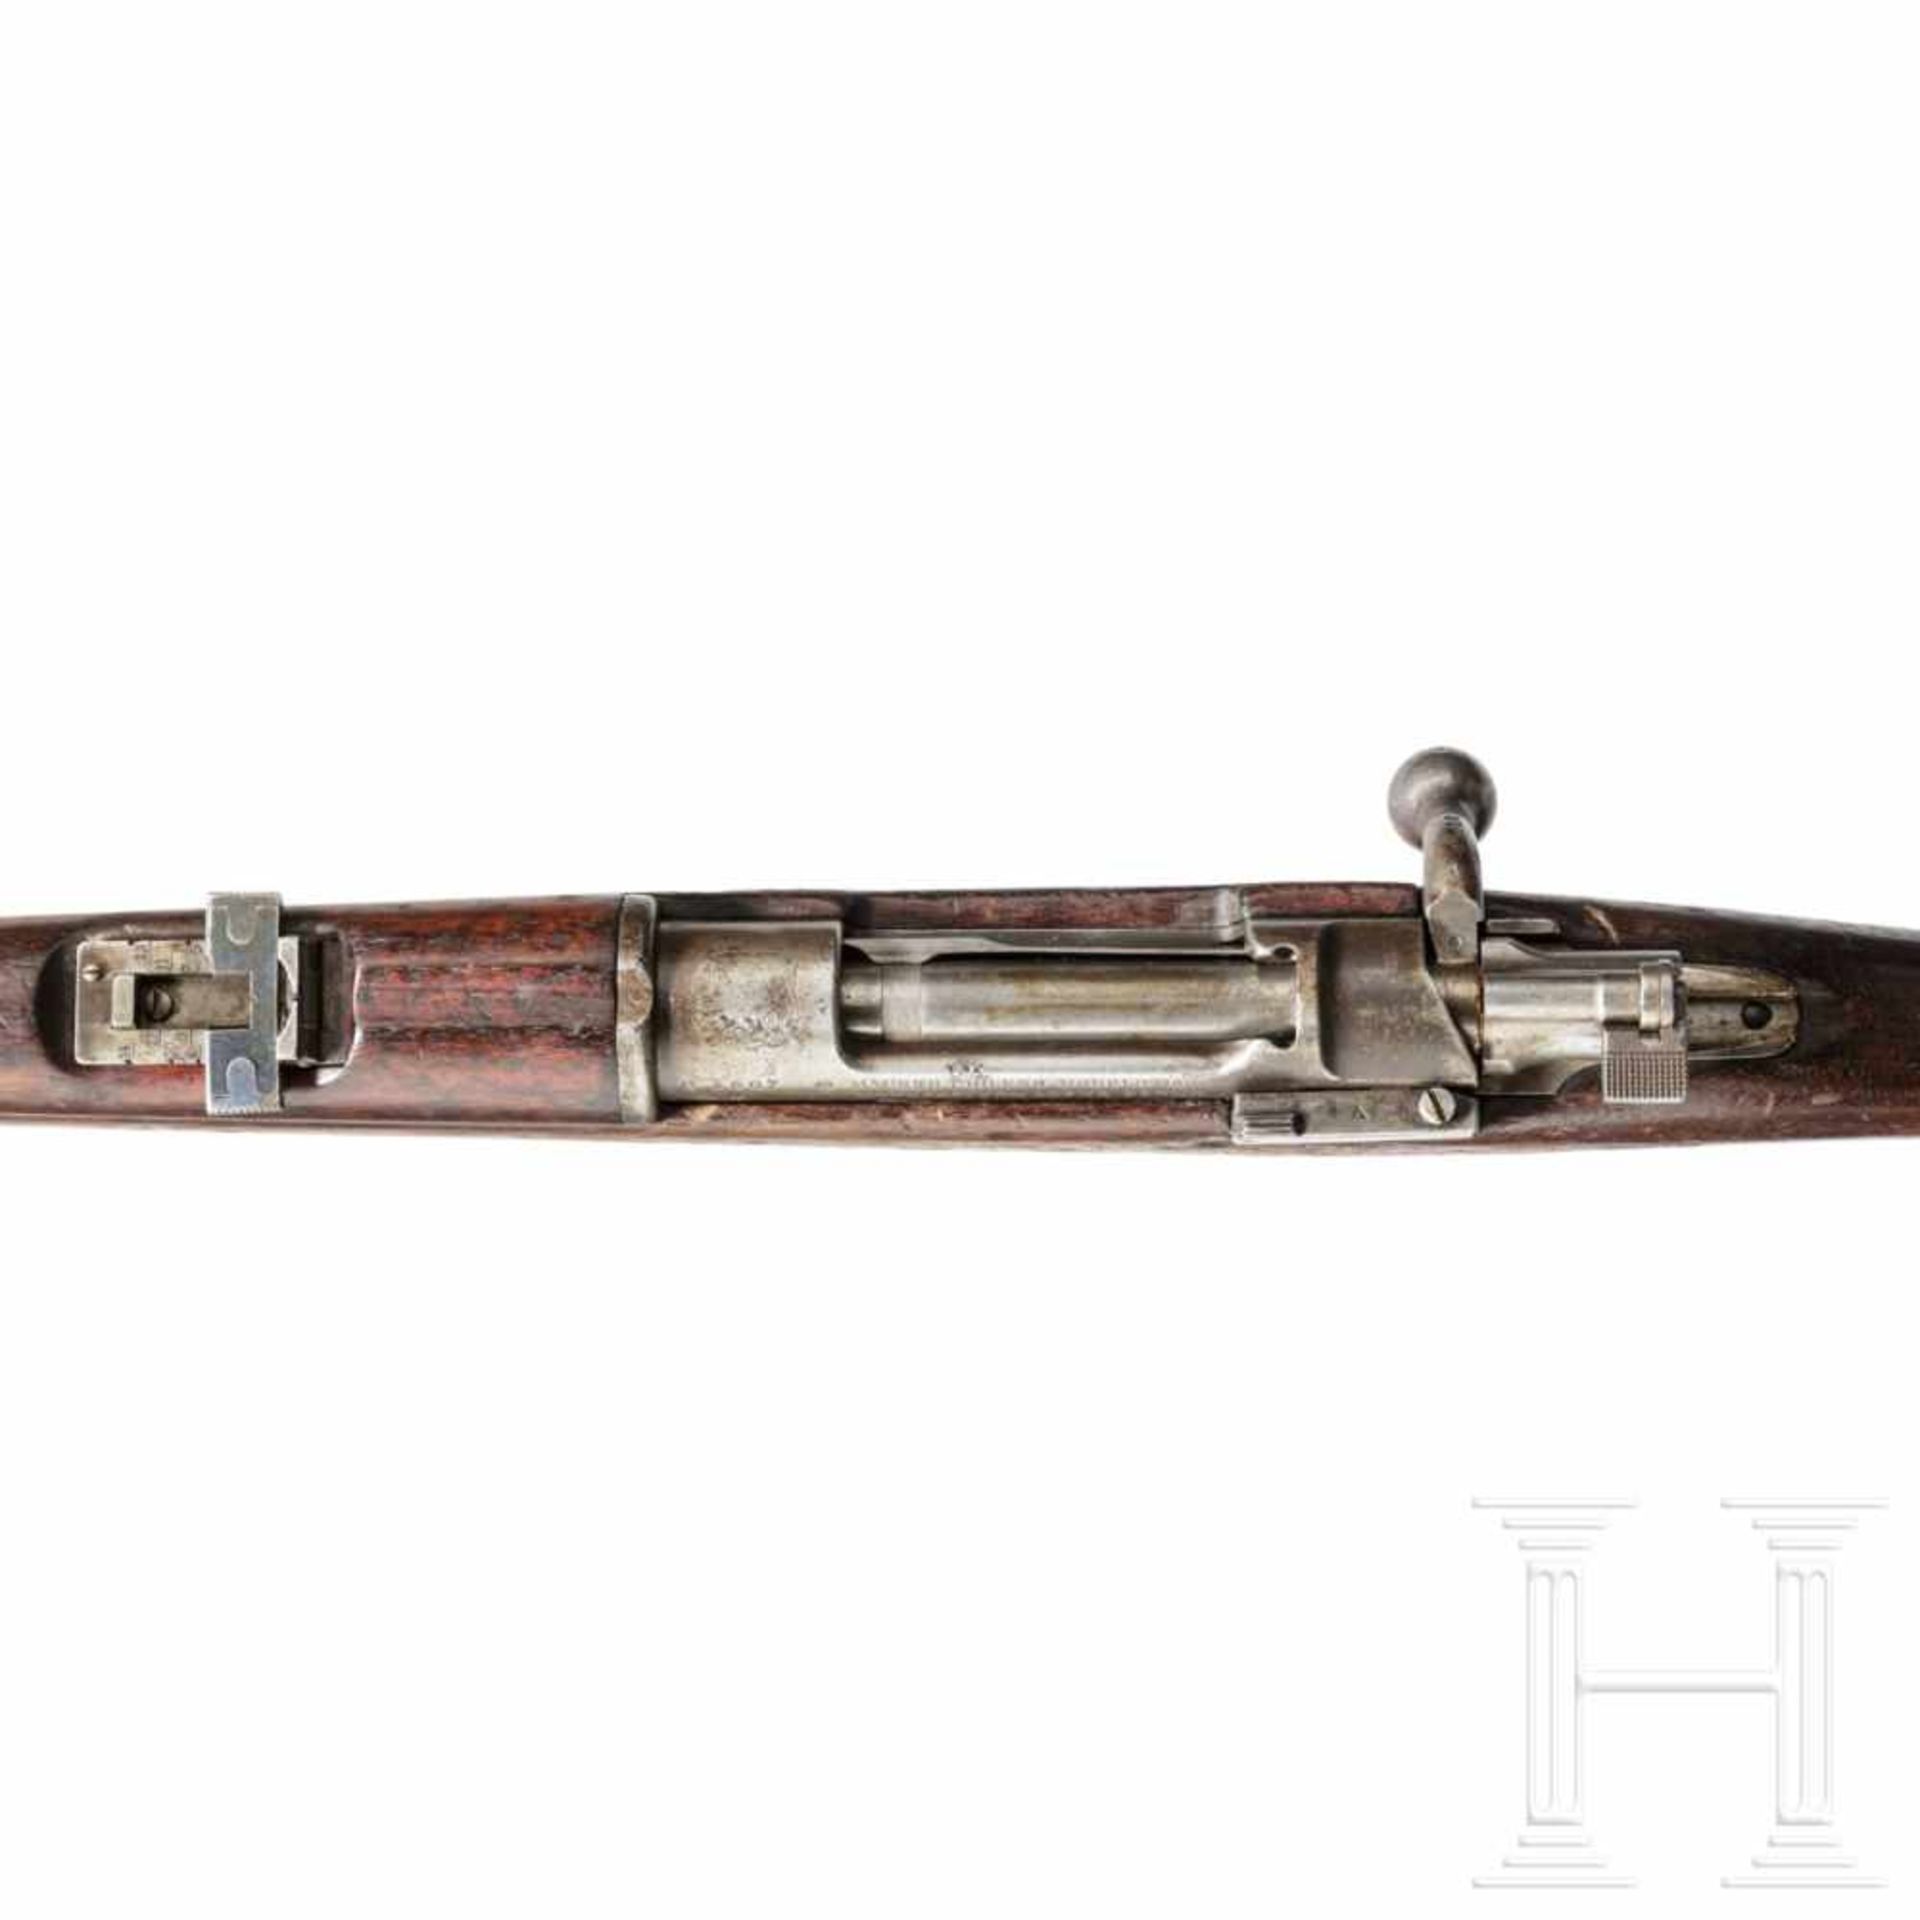 Chile - Kurzgewehr Mod. 1895, LoeweKal. 7x57, Nr. C 3607, nicht nummerngleich. Blanker Lauf. - Bild 3 aus 3